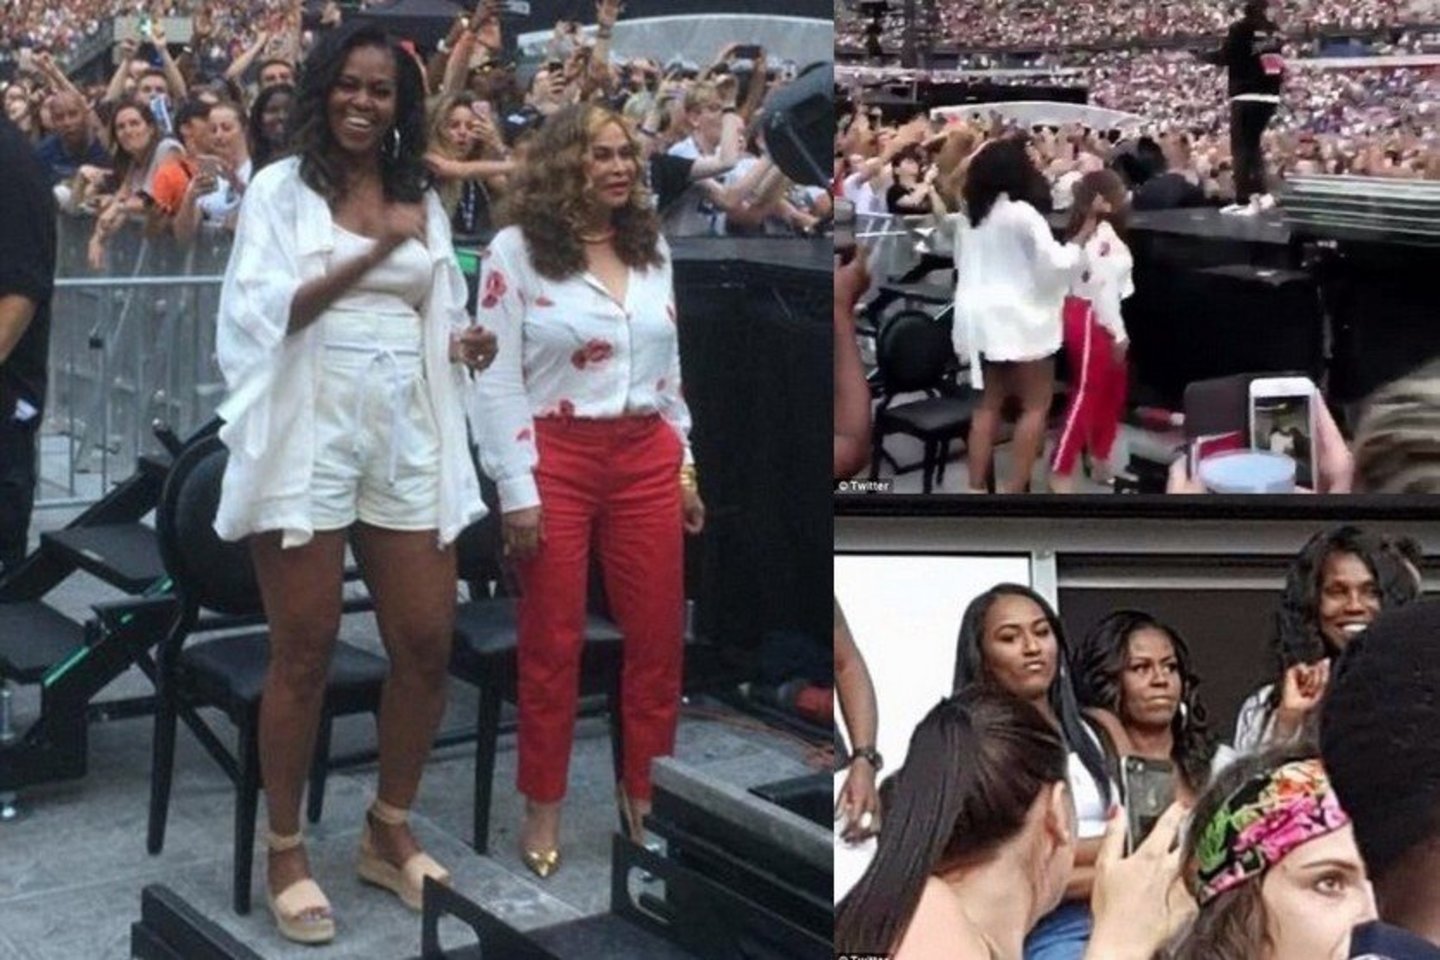  M.Obama Paryžiuje lankėsi Beyonce ir Jay-Z koncerte.<br> Twitter nuotr.